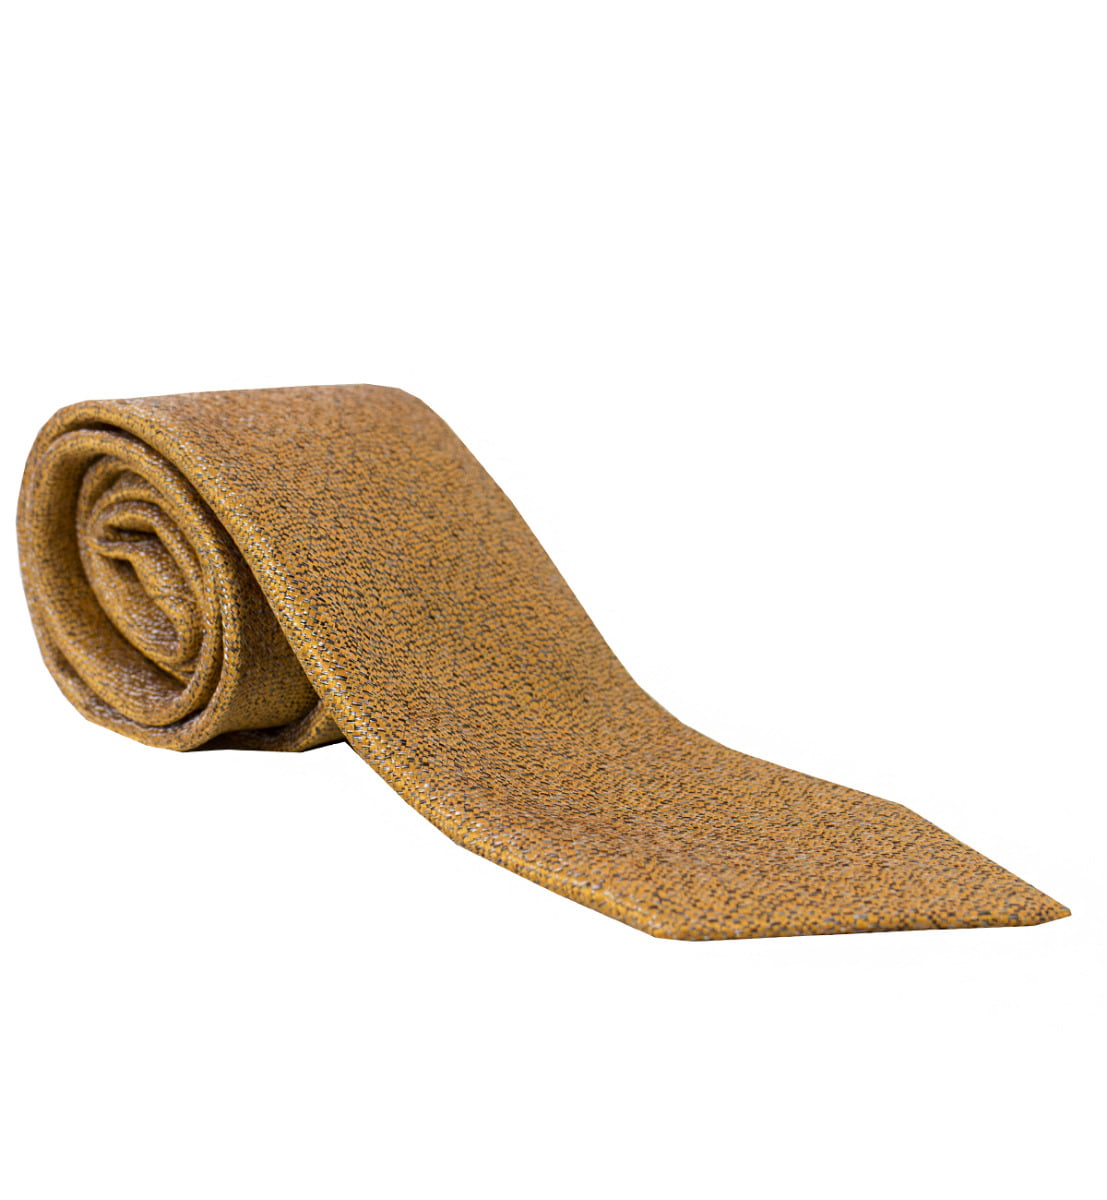 Cravatta uomo bronzo effetto melange 8cm di larghezza made in italy